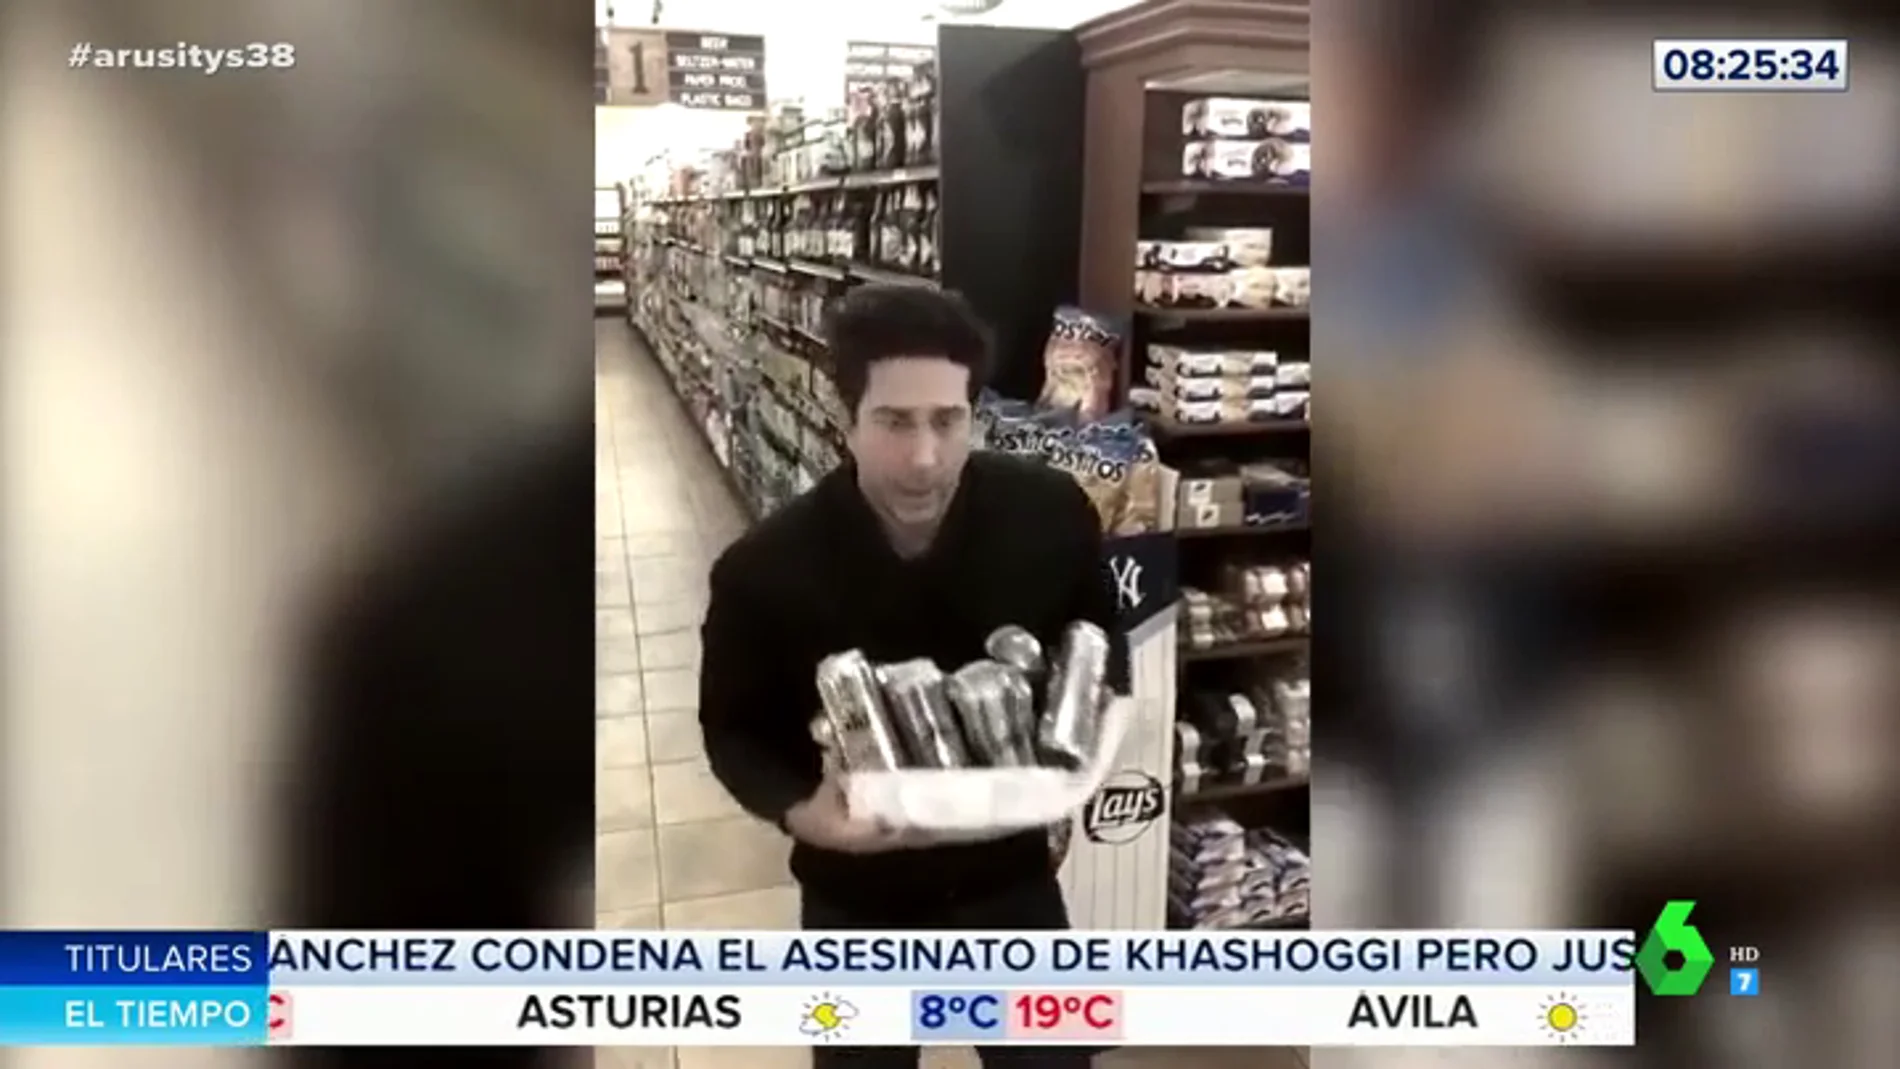 El divertido vídeo de David Schwimmer, Ross de 'Friends', parodiando el robo en un supermercado del que ha sido acusado por error